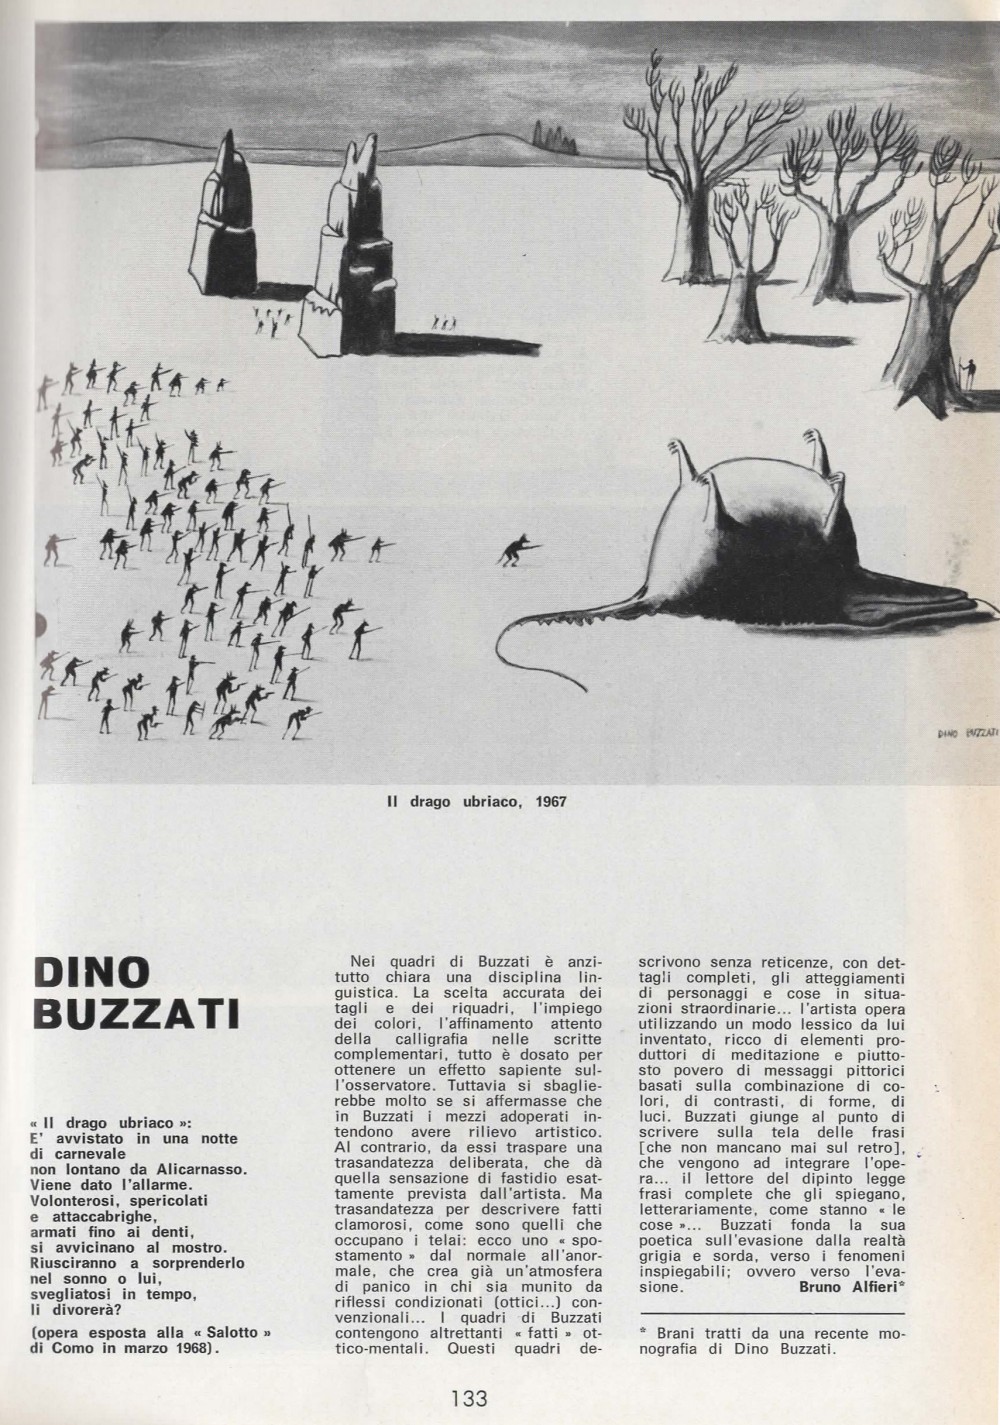 D’ARS n. 40 anno IX . febbraio/giugno 1968, pag. 133. Immagine: Il Drago Ubriaco, 1967 – opera esposta alla Galleria “Salotto” di Como, 1968